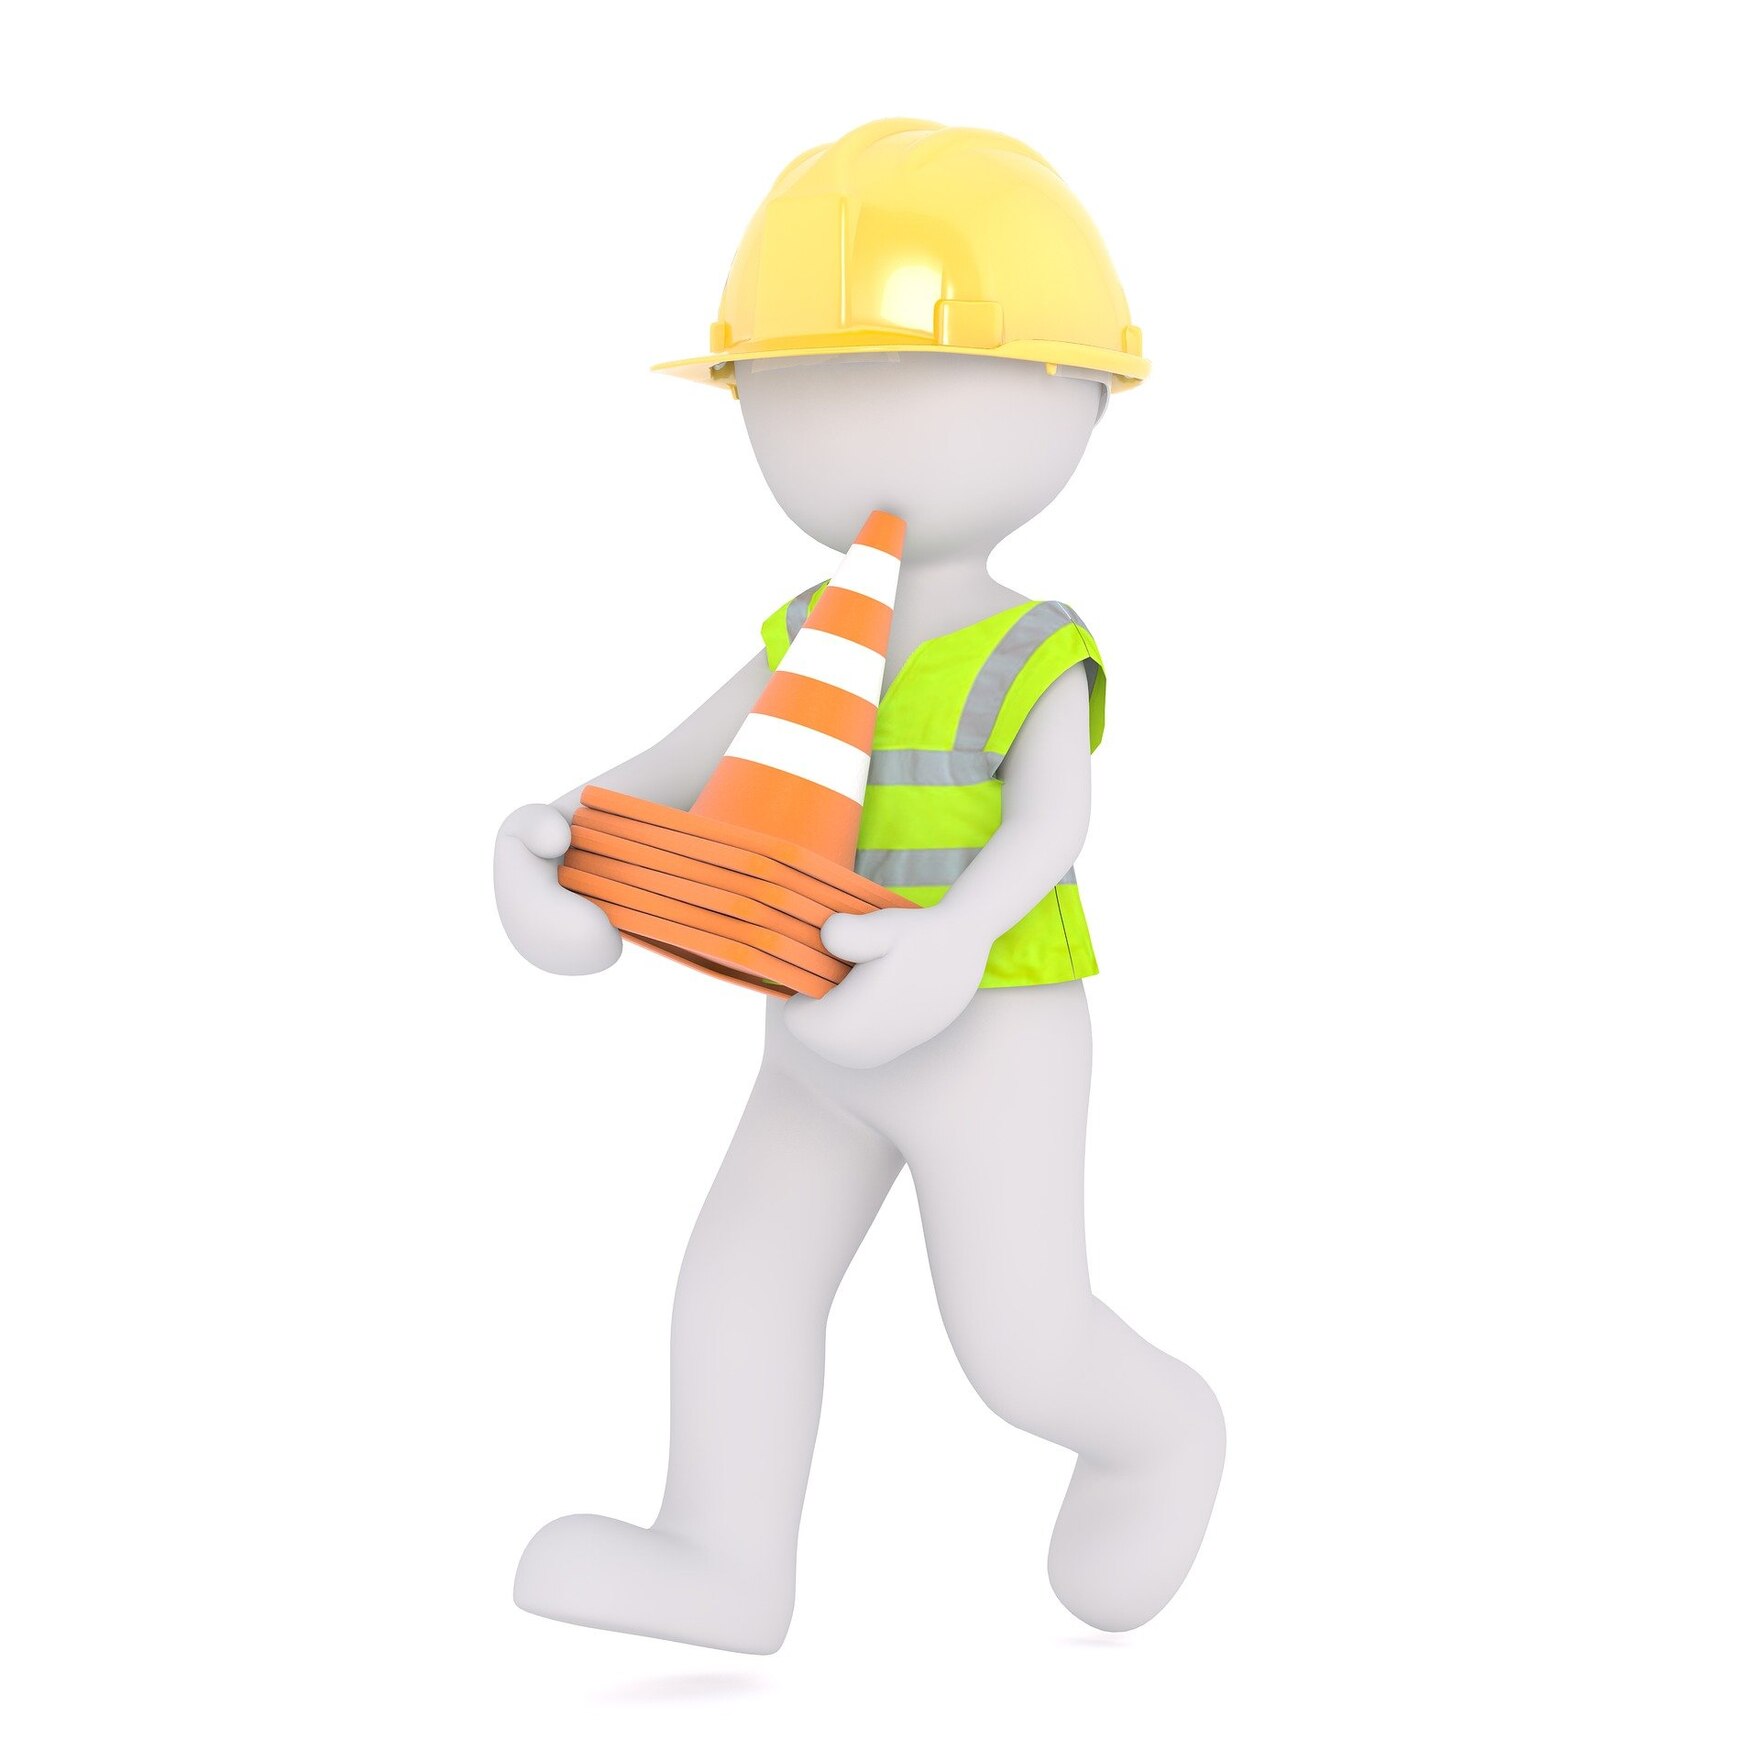 Grafik: Bauarbeiter mit Warnweste und Helm trägt Kegel.